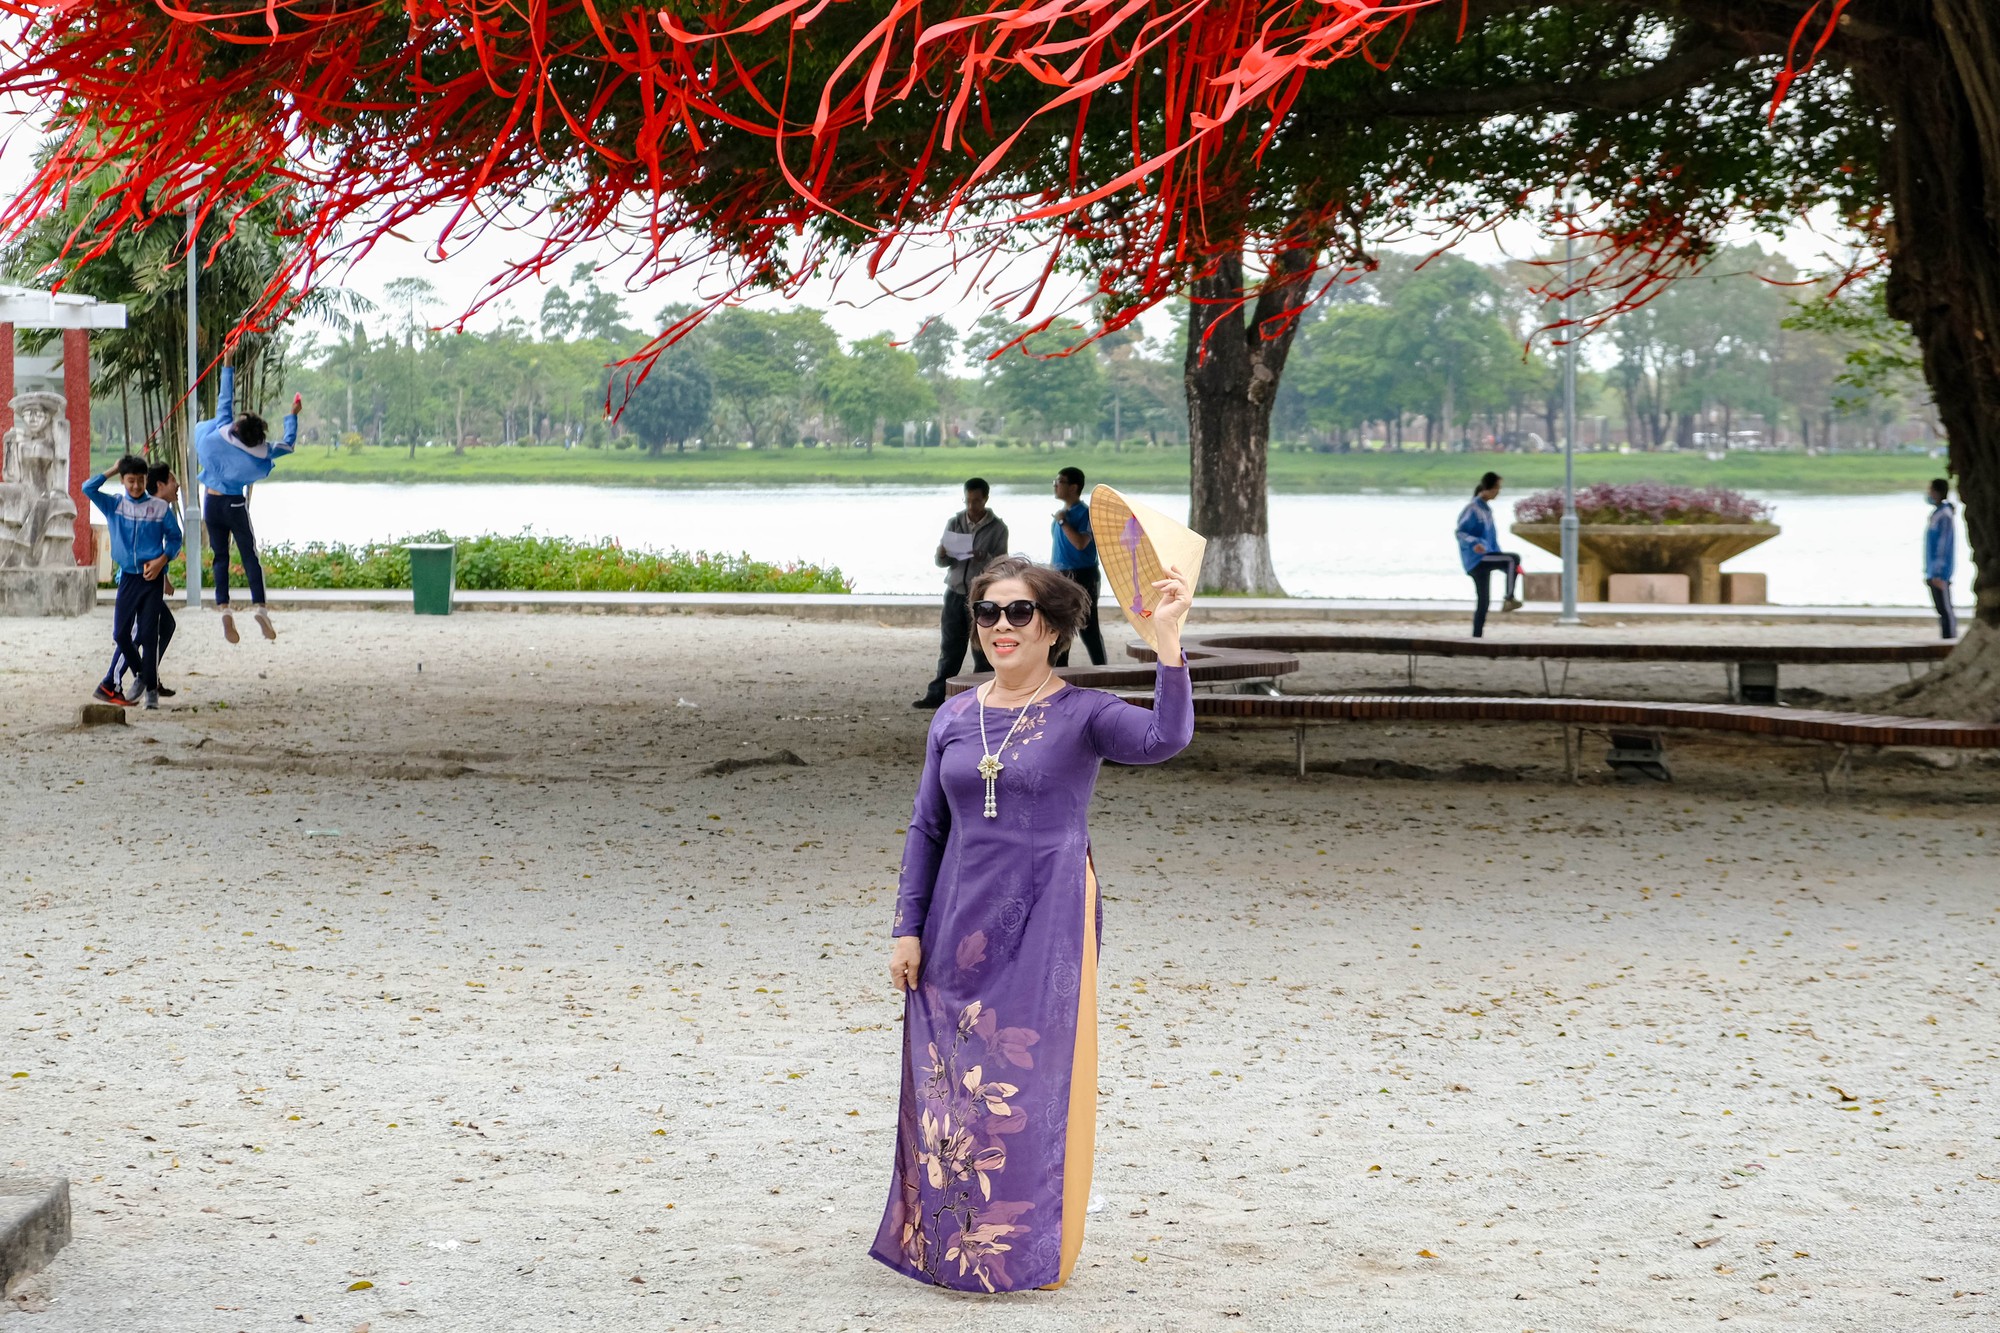 Chị Thanh Hoài - người dân TP Huế chia sẻ: “Đến đây, tôi cảm thấy rất thoải mái khi xung quanh công viên là cây cối và phía sau là sông Hương, tạo nên không gian rất thoáng mát”.